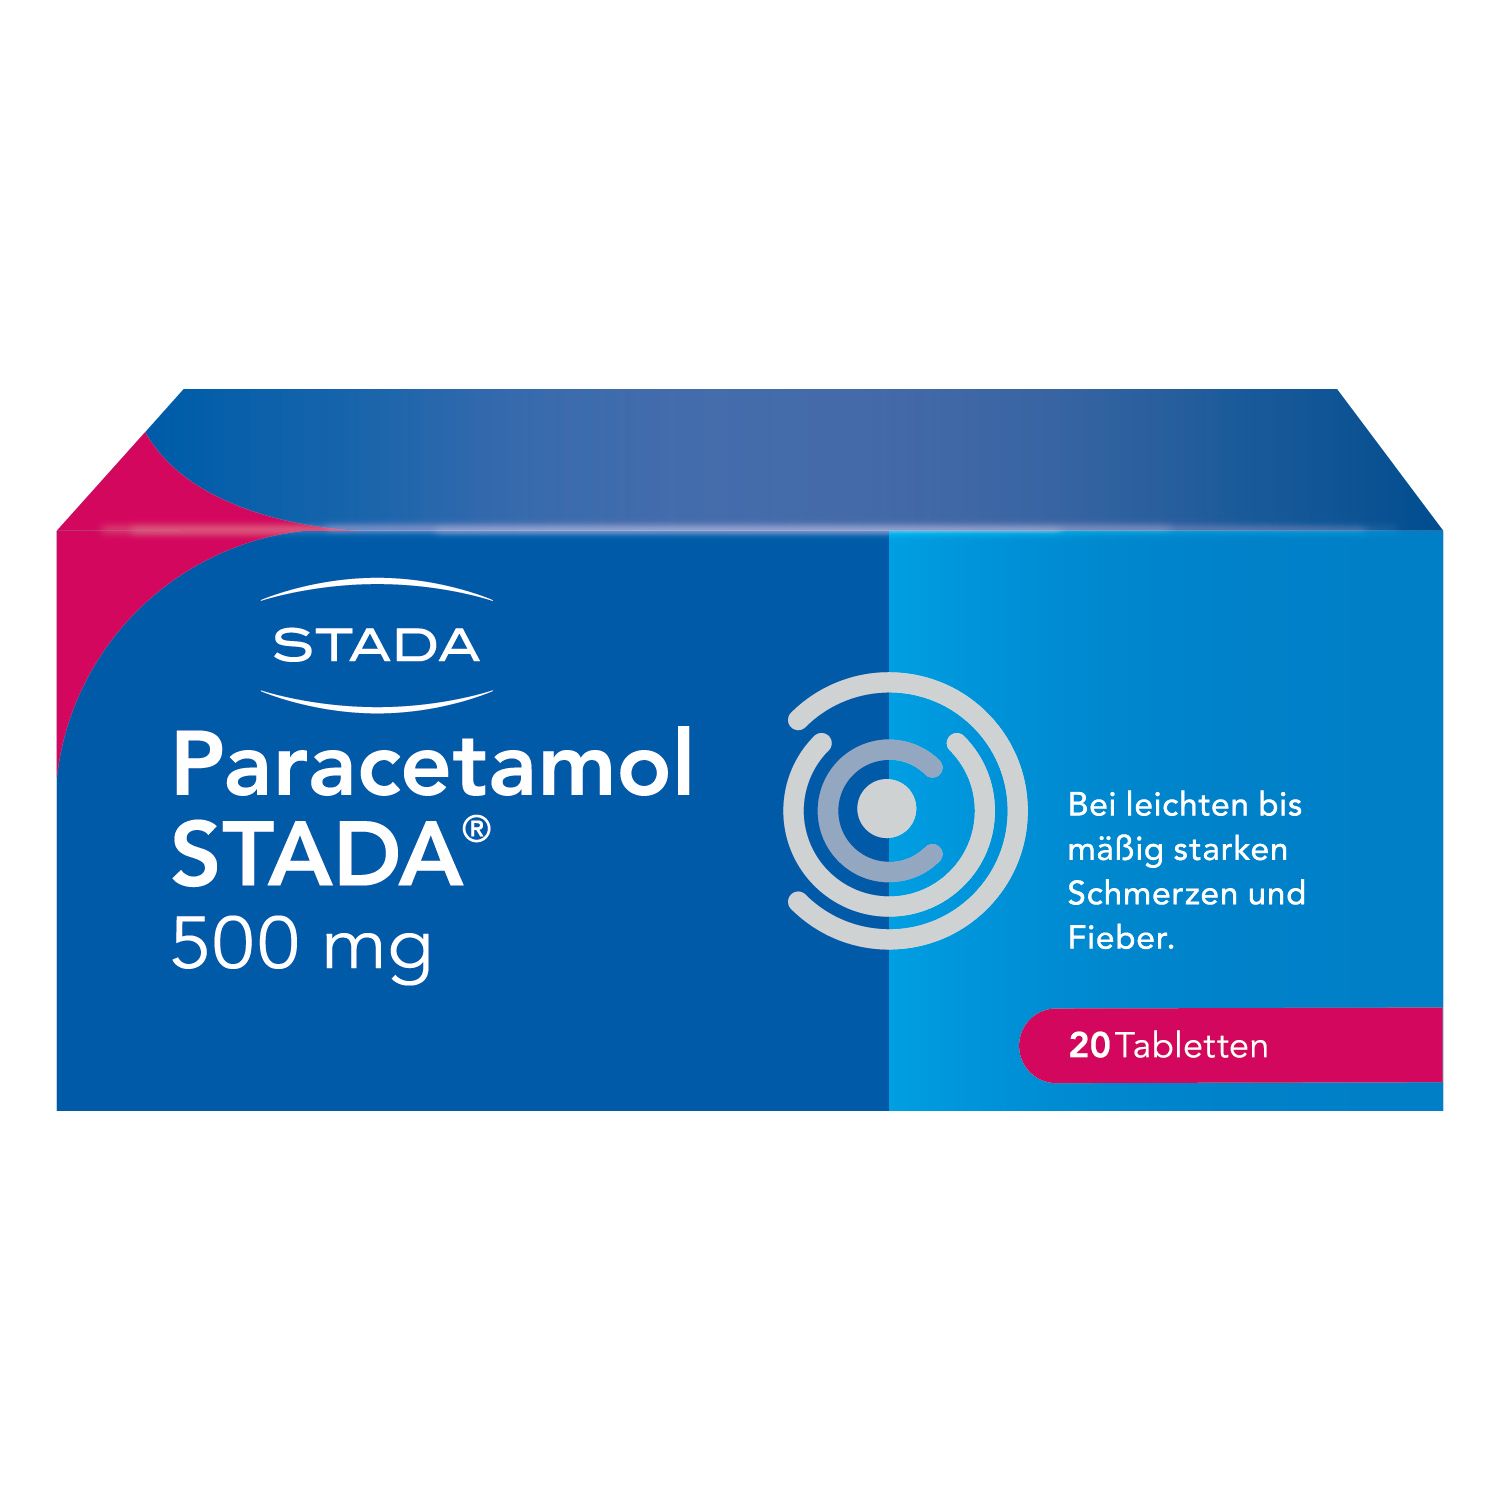 Paracetamol STADA® 500 mg Tabletten, bei leichten bis mäßig starken Schmerzen und Fieber